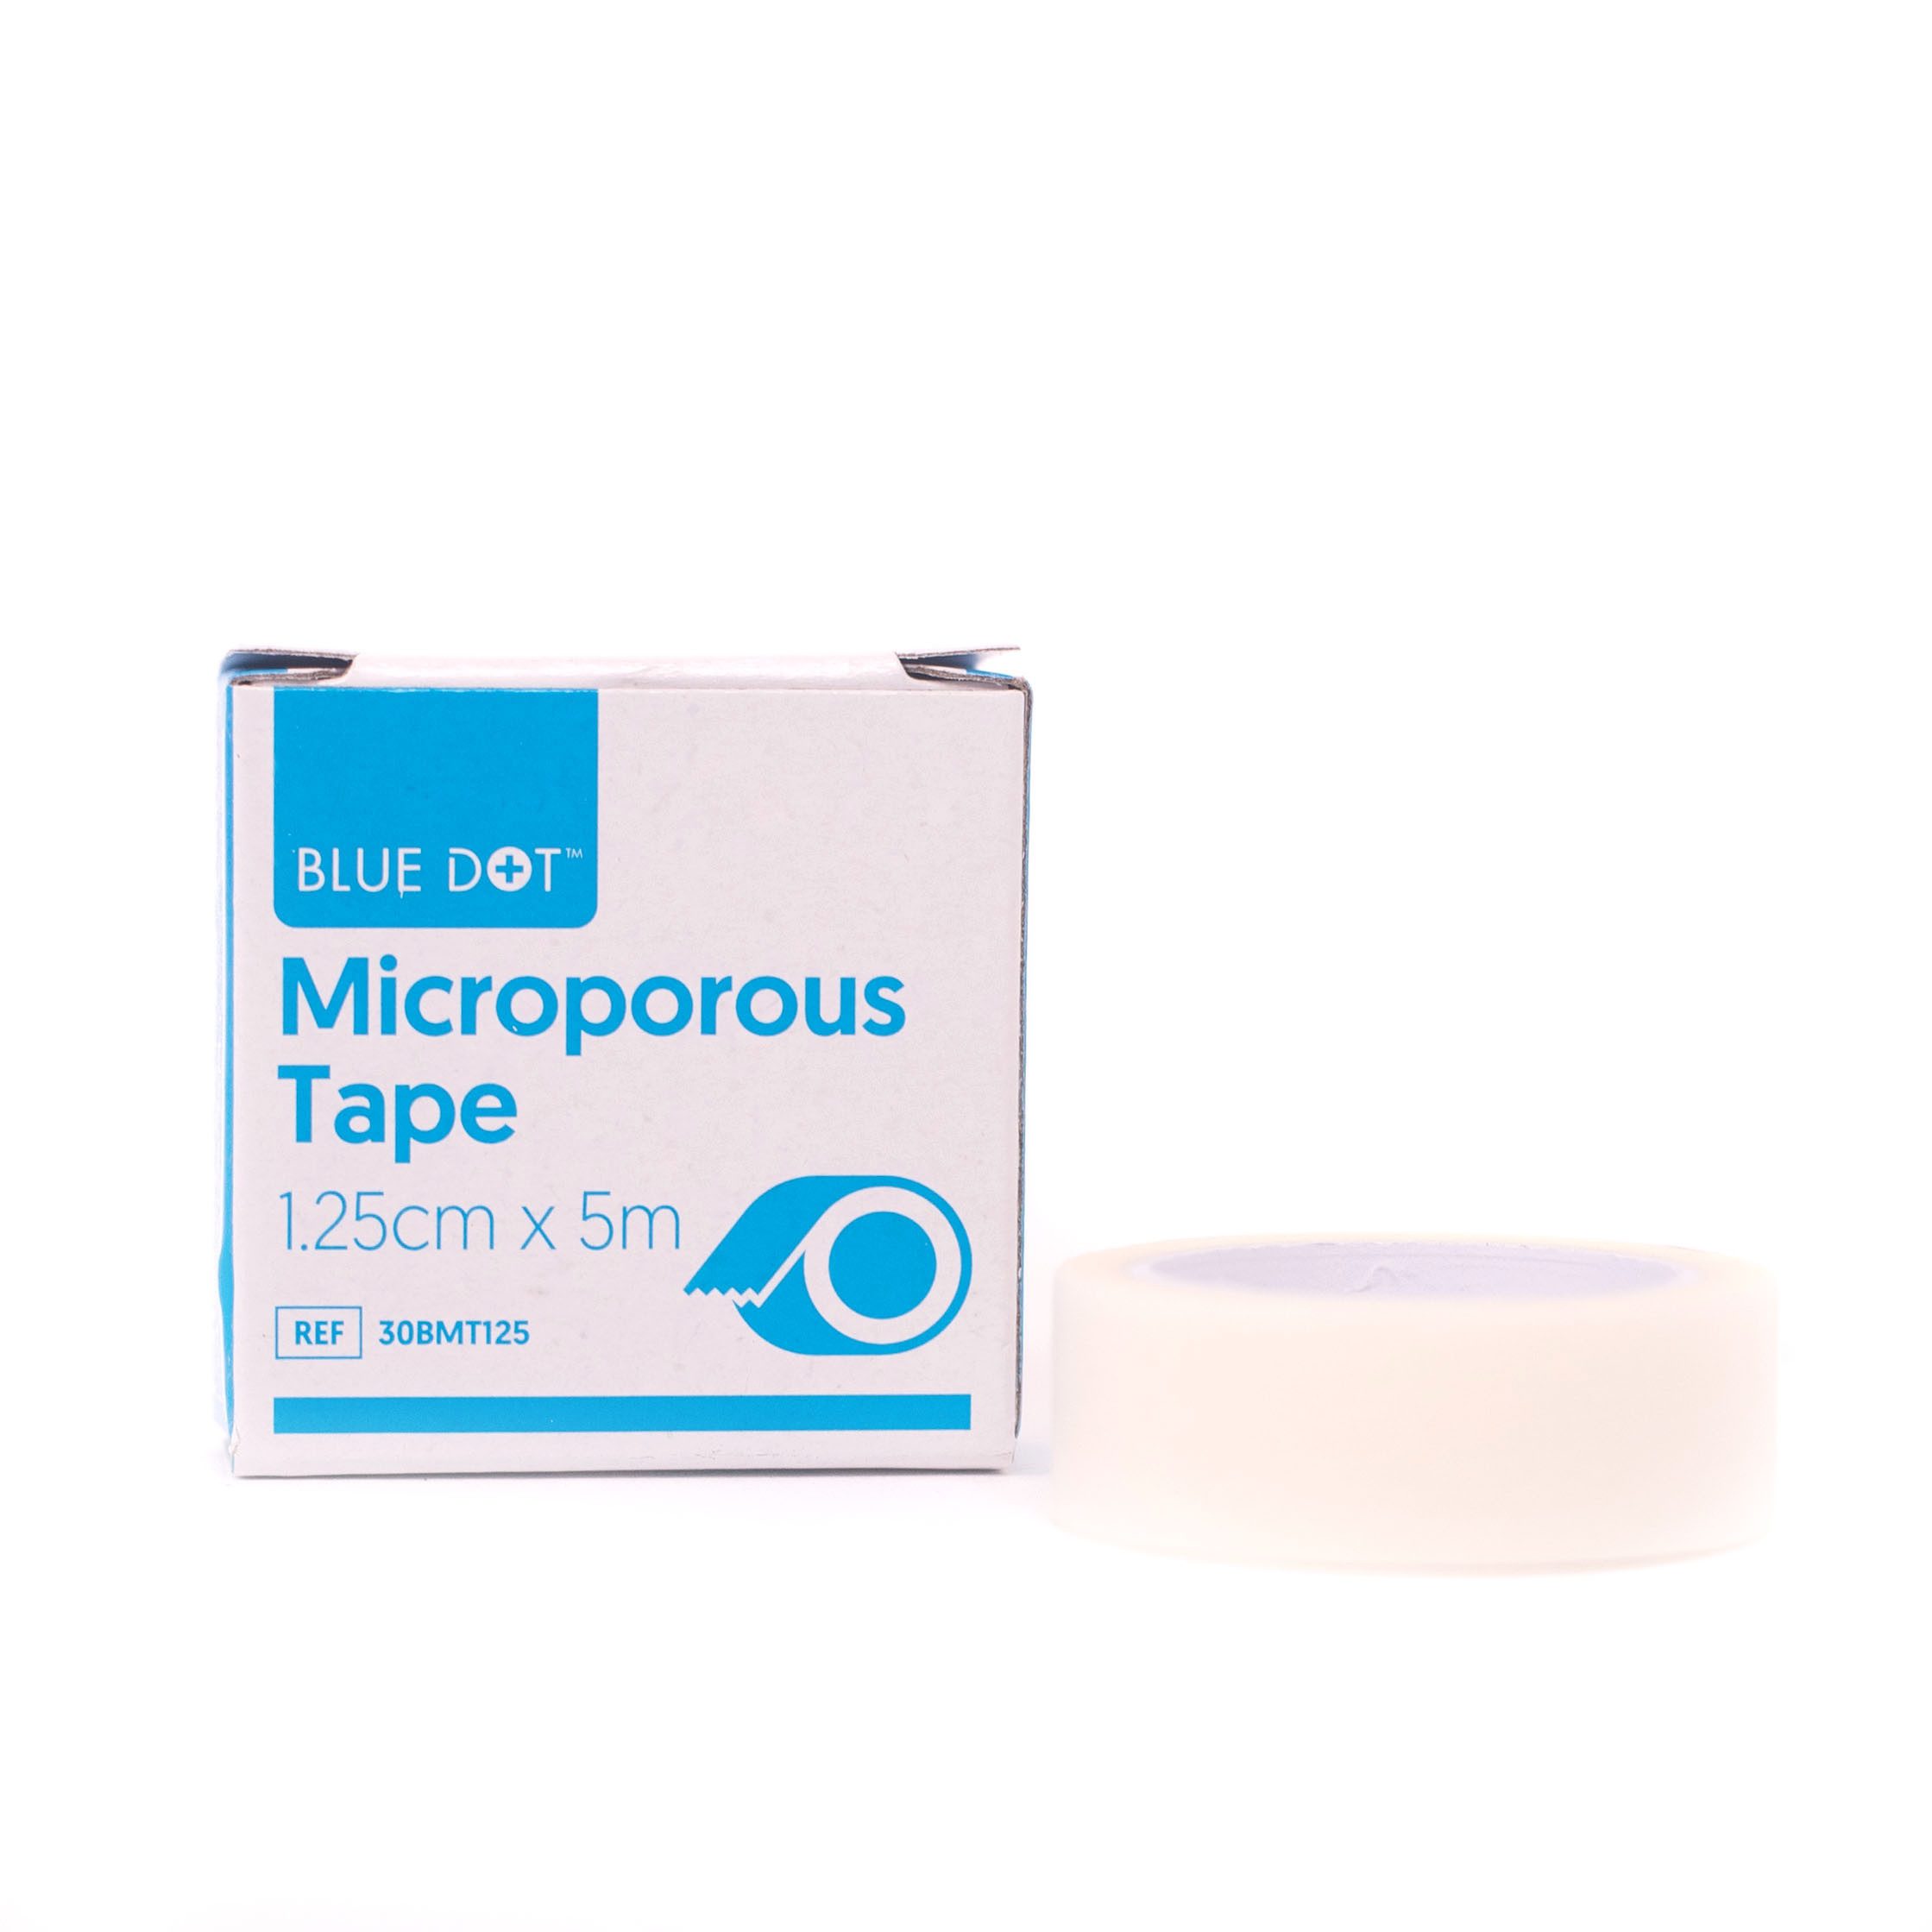 Microporous Tape - 1.25cm x 5m